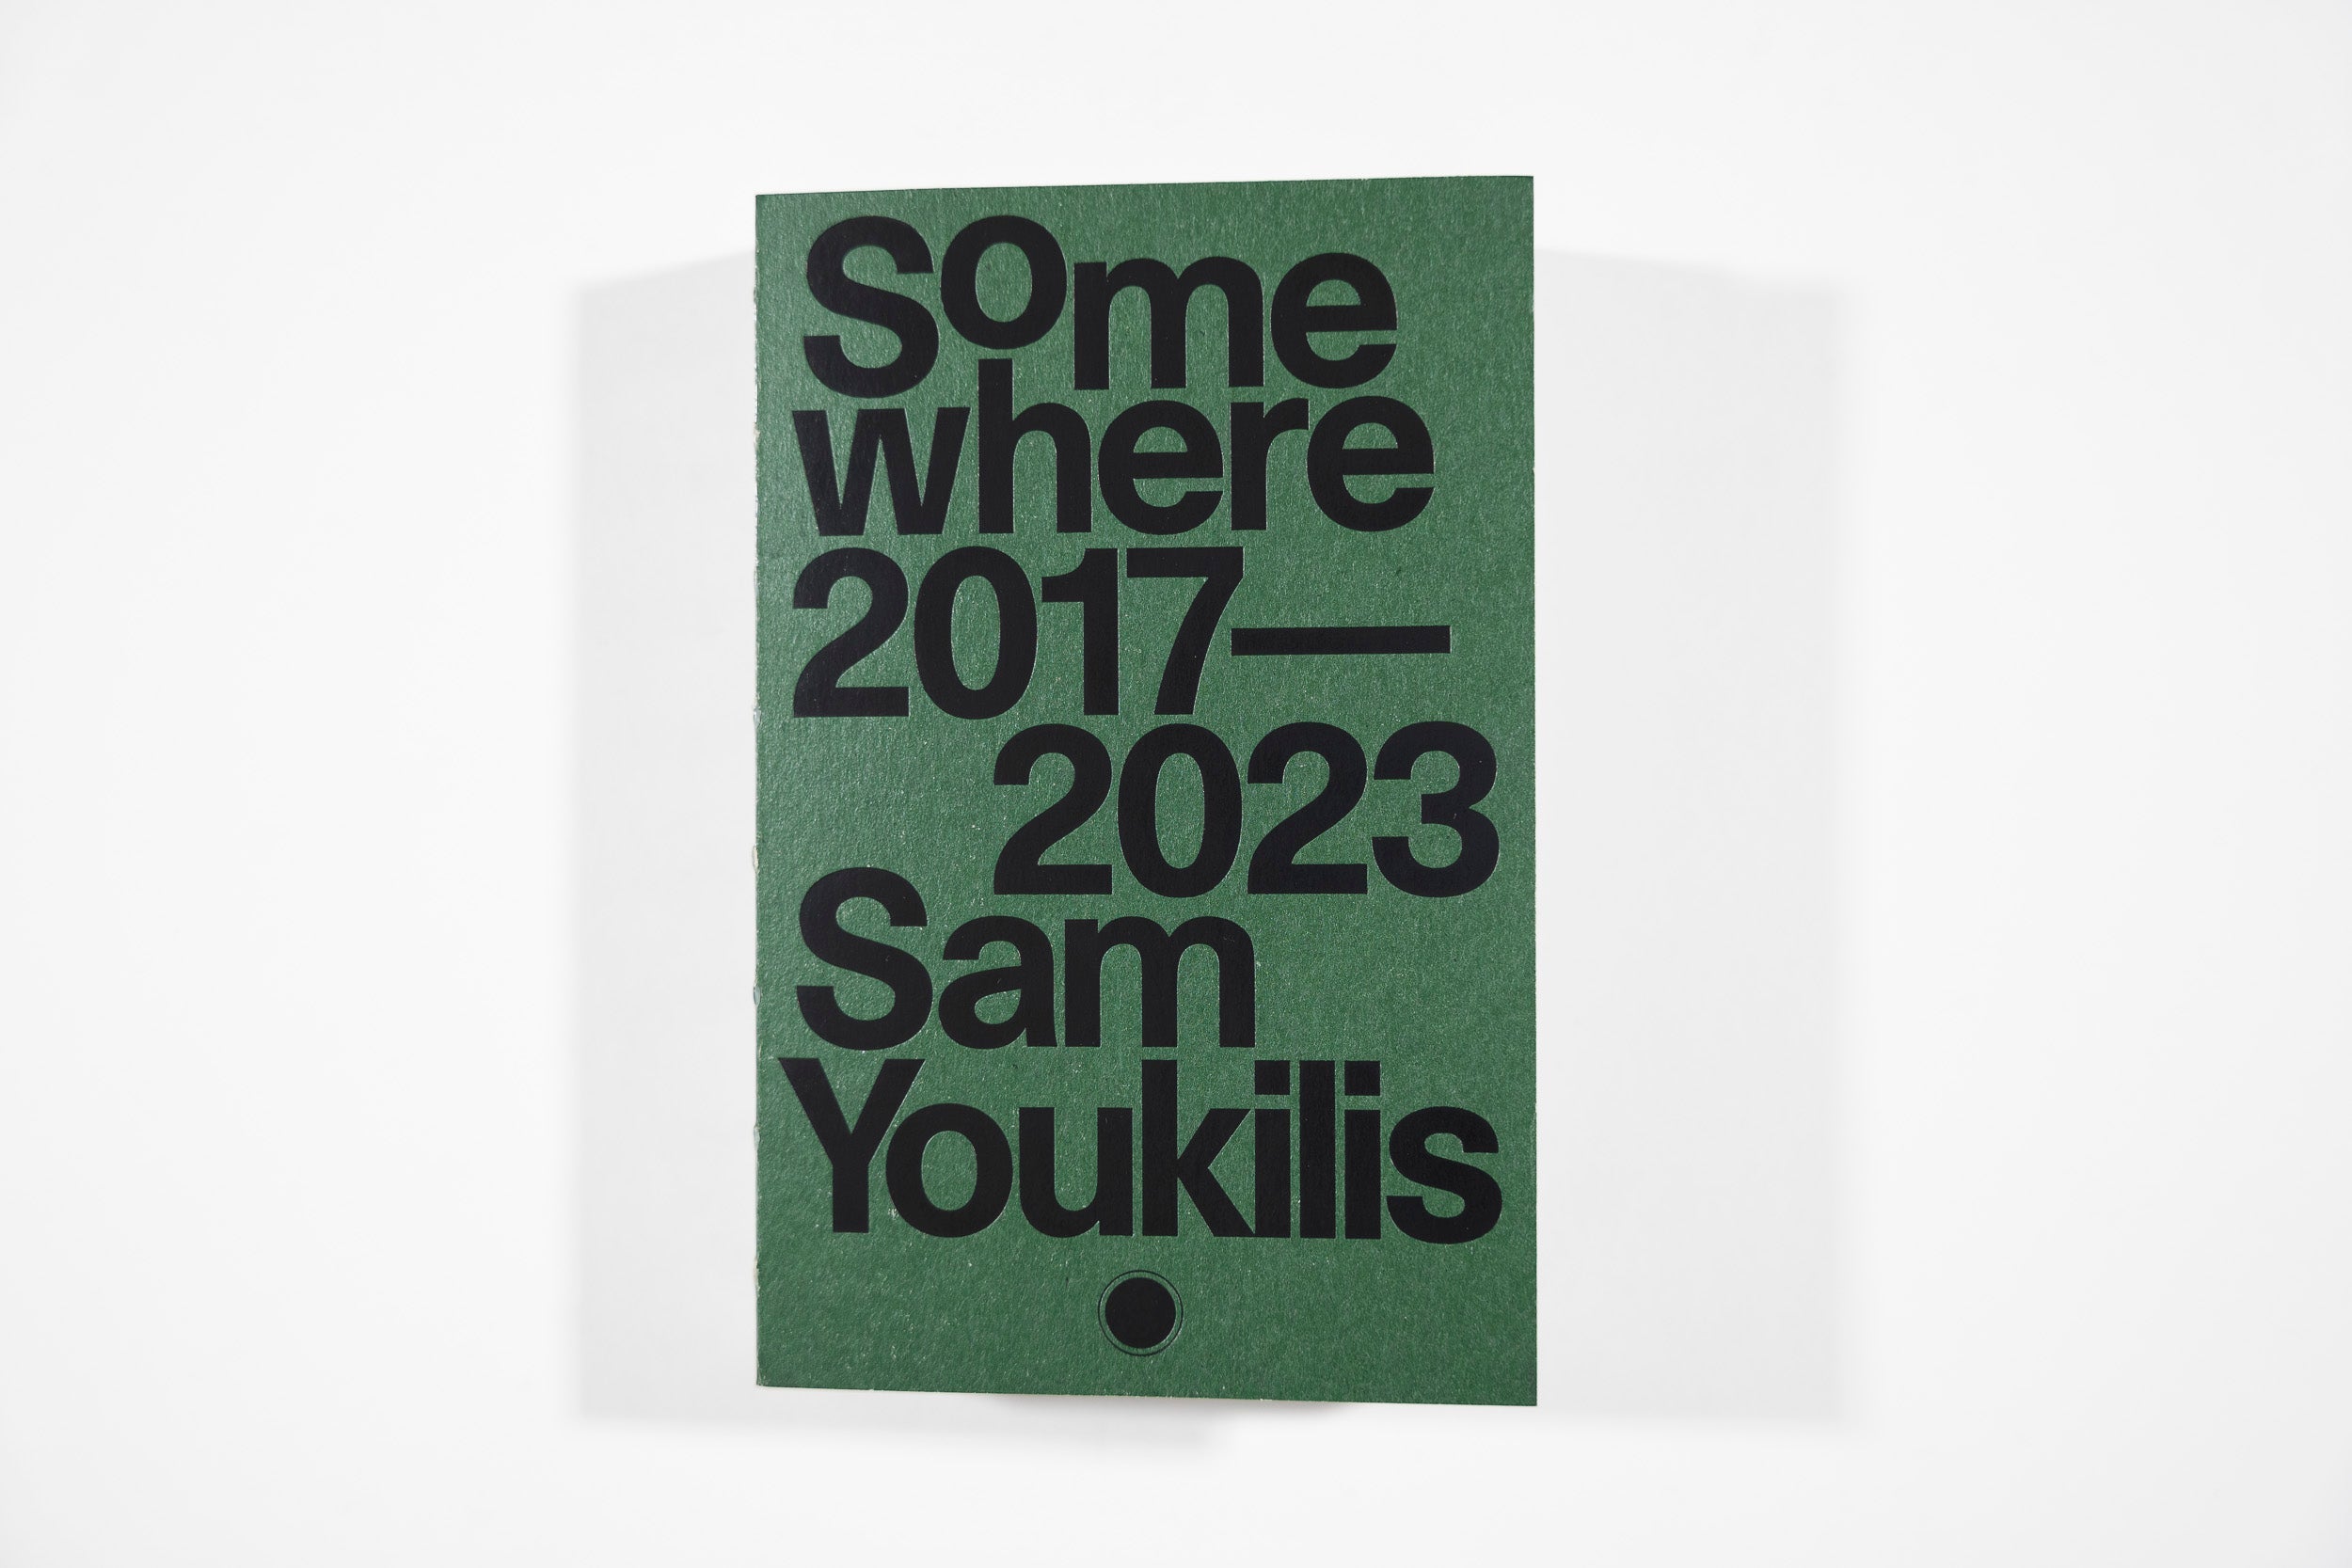 Somewhere 2017 - 2023 - Sam Youkilis